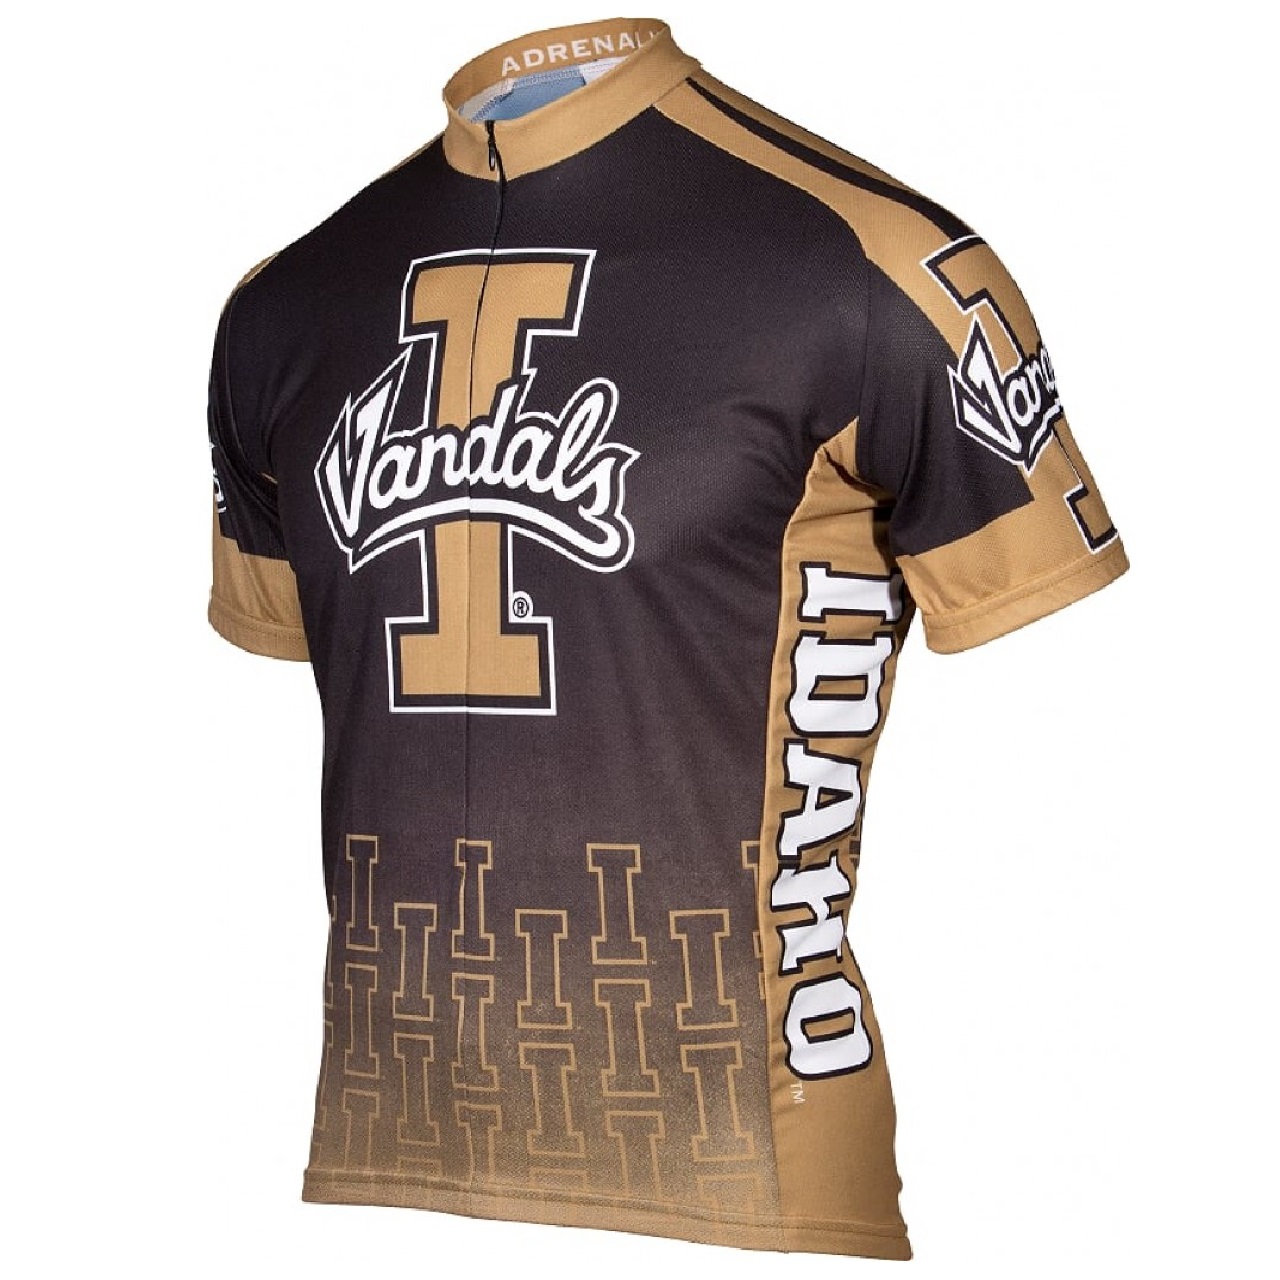 Adrenaline Promo Idaho University Vandals 3/4 zip Men's Cycling Jersey